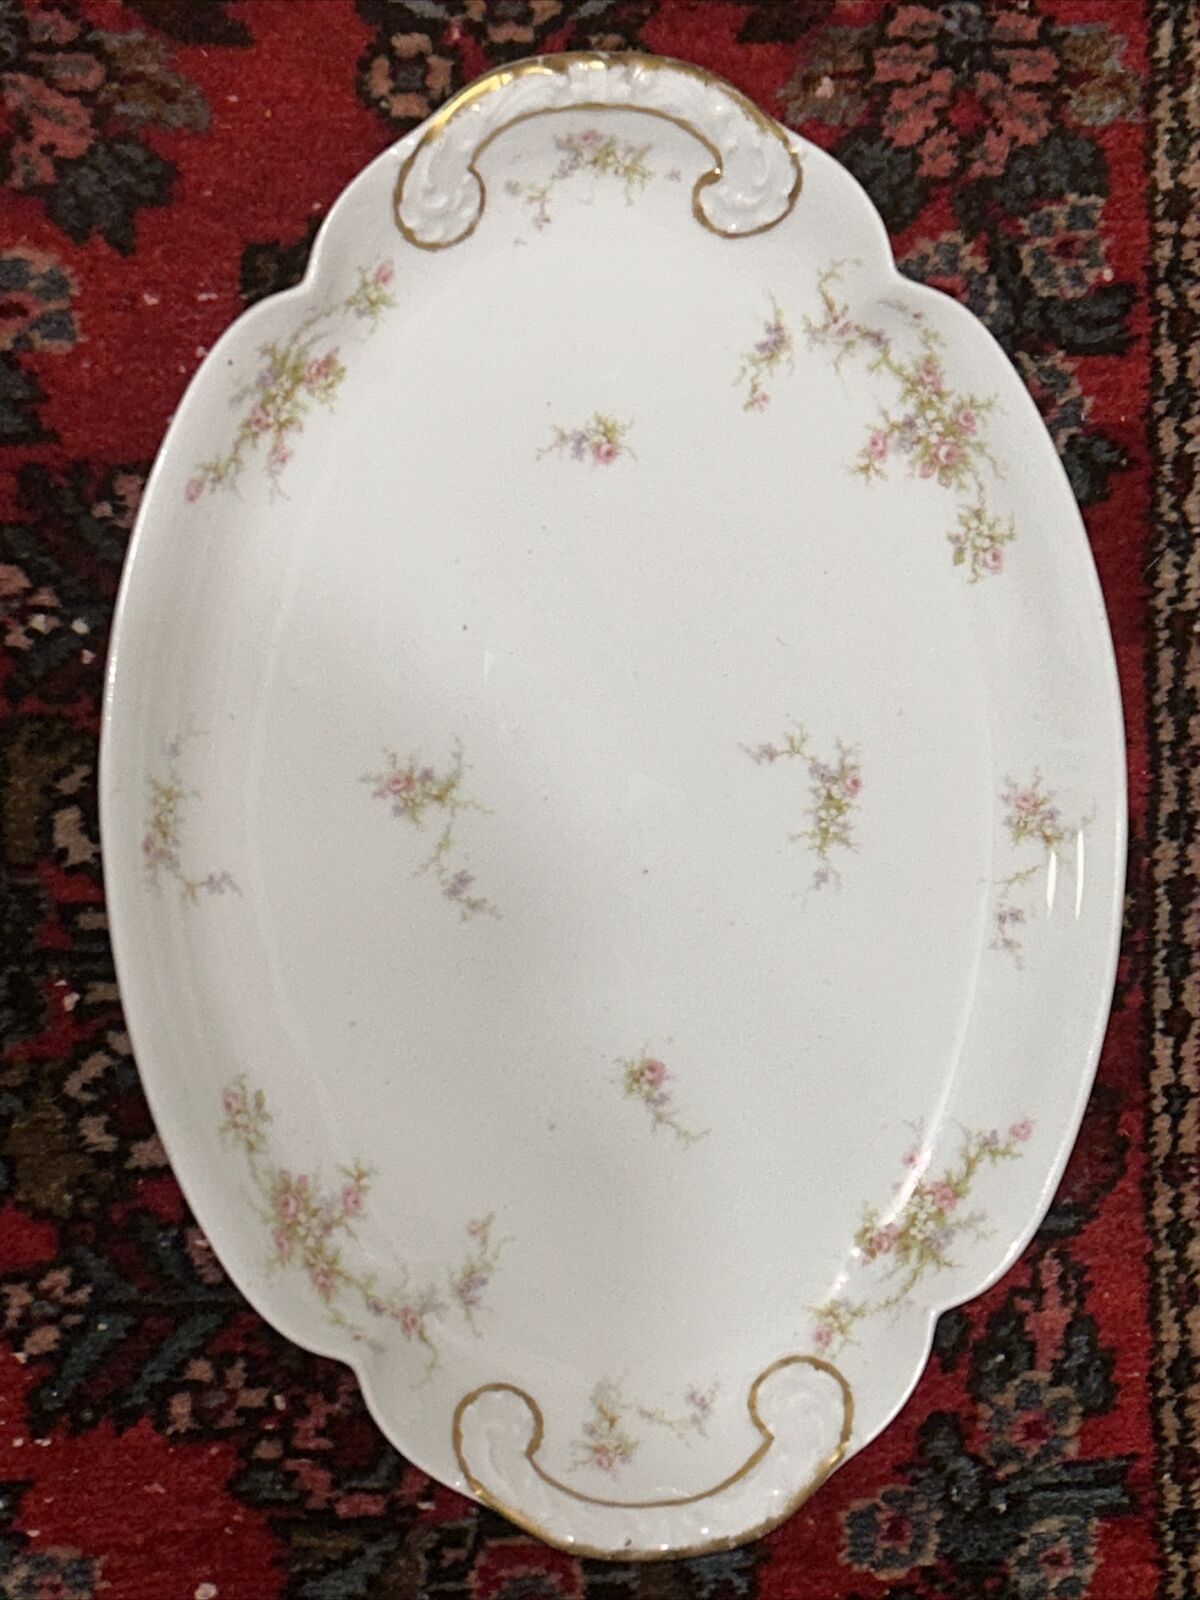 1903 Antique Theodore Haviland Limoges porcelain floral Serving Platter￼ 16”x11”